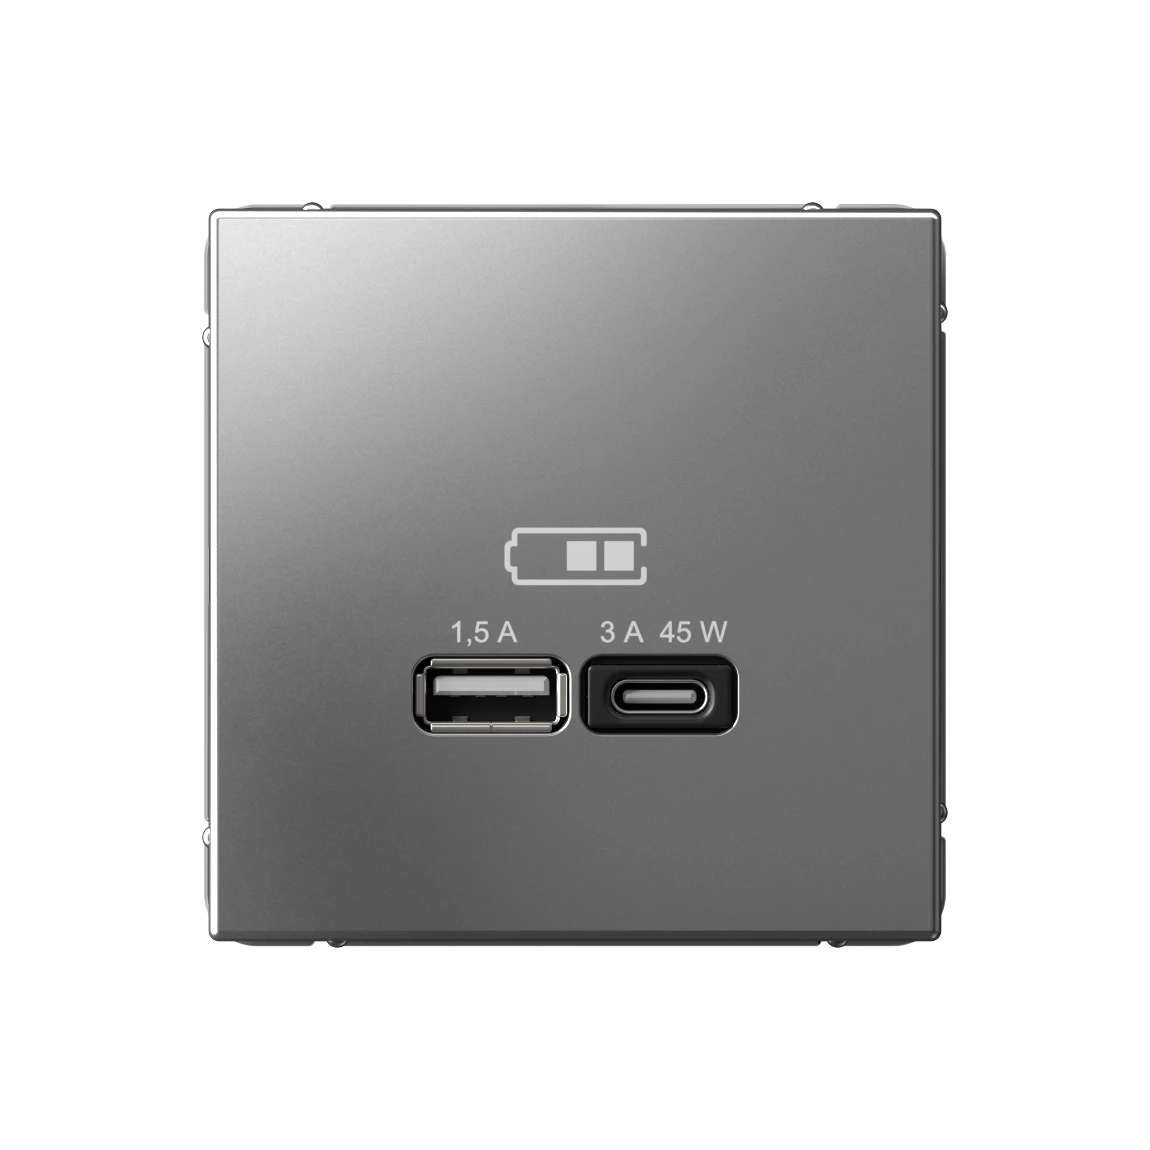  артикул GAL000929 название Розетка двойная для быcтрой зарядки USB, Тип А+С, 45Вт , Сталь, серия Art Gallery, Schneider Electric